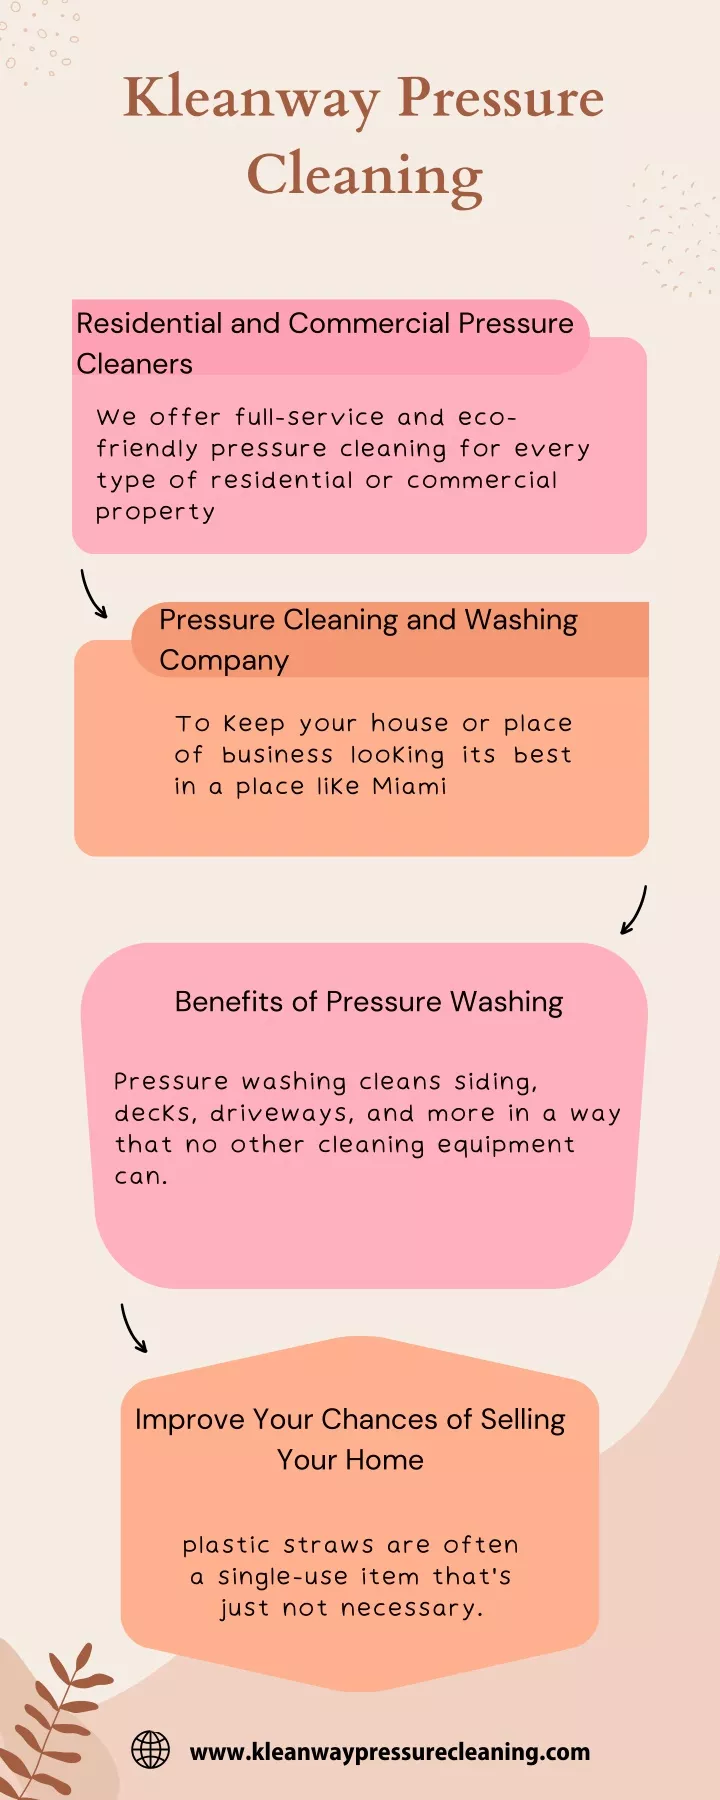 kleanway pressure cleaning